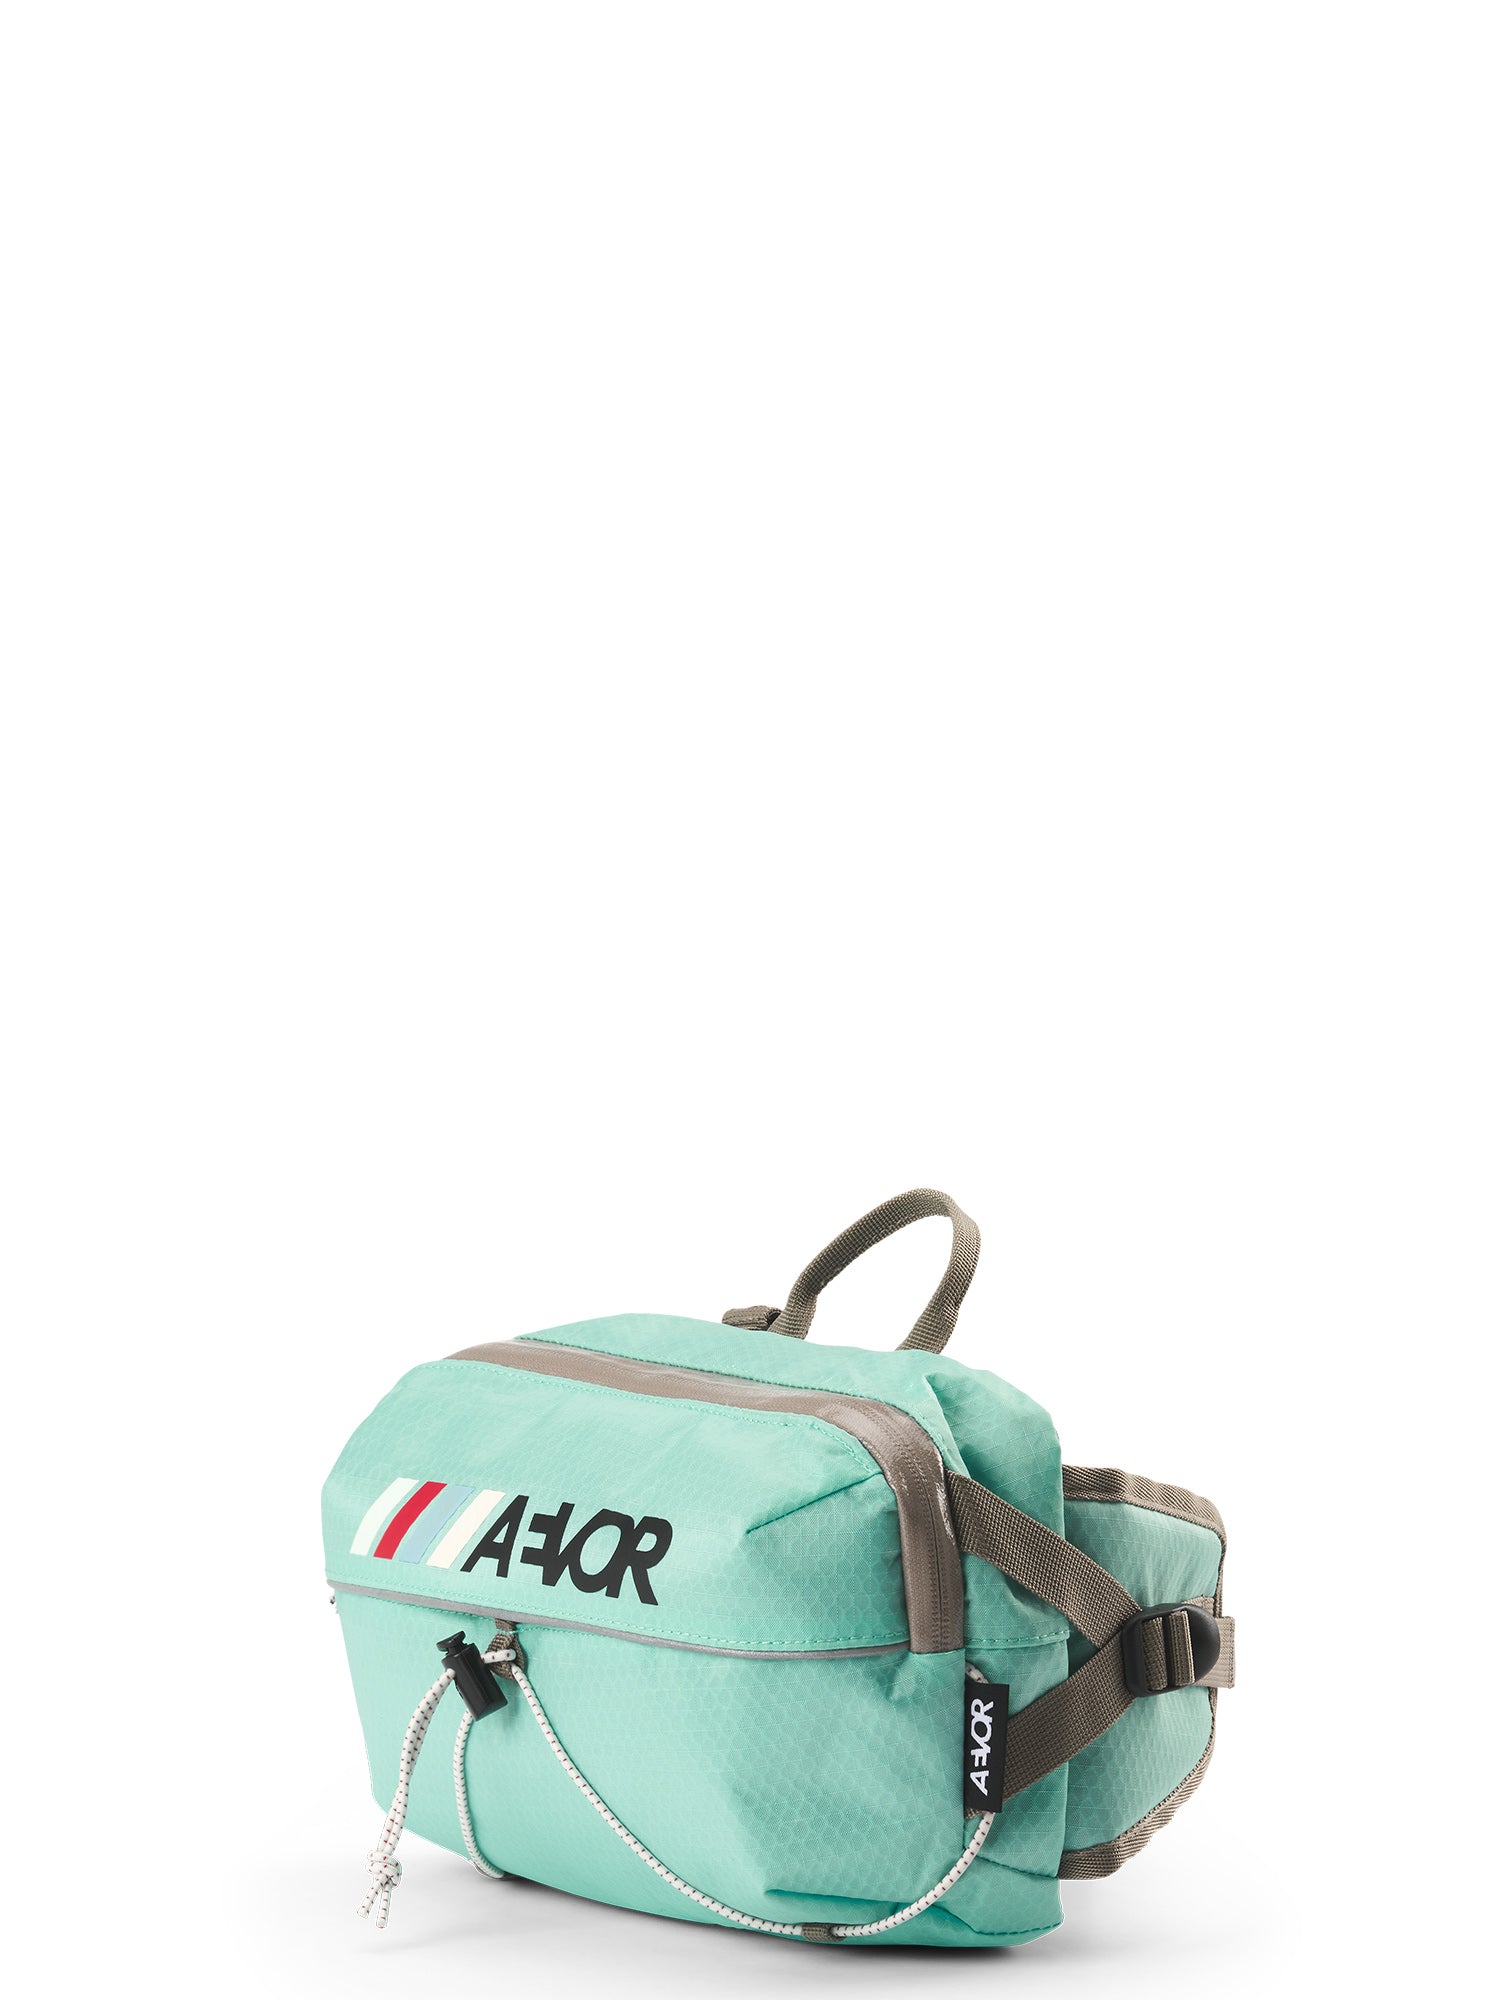 AEVOR Bar Bag Handlebar Bag / GIRO SPECIAL MODEL - Proof Green Blue (Turquoise)